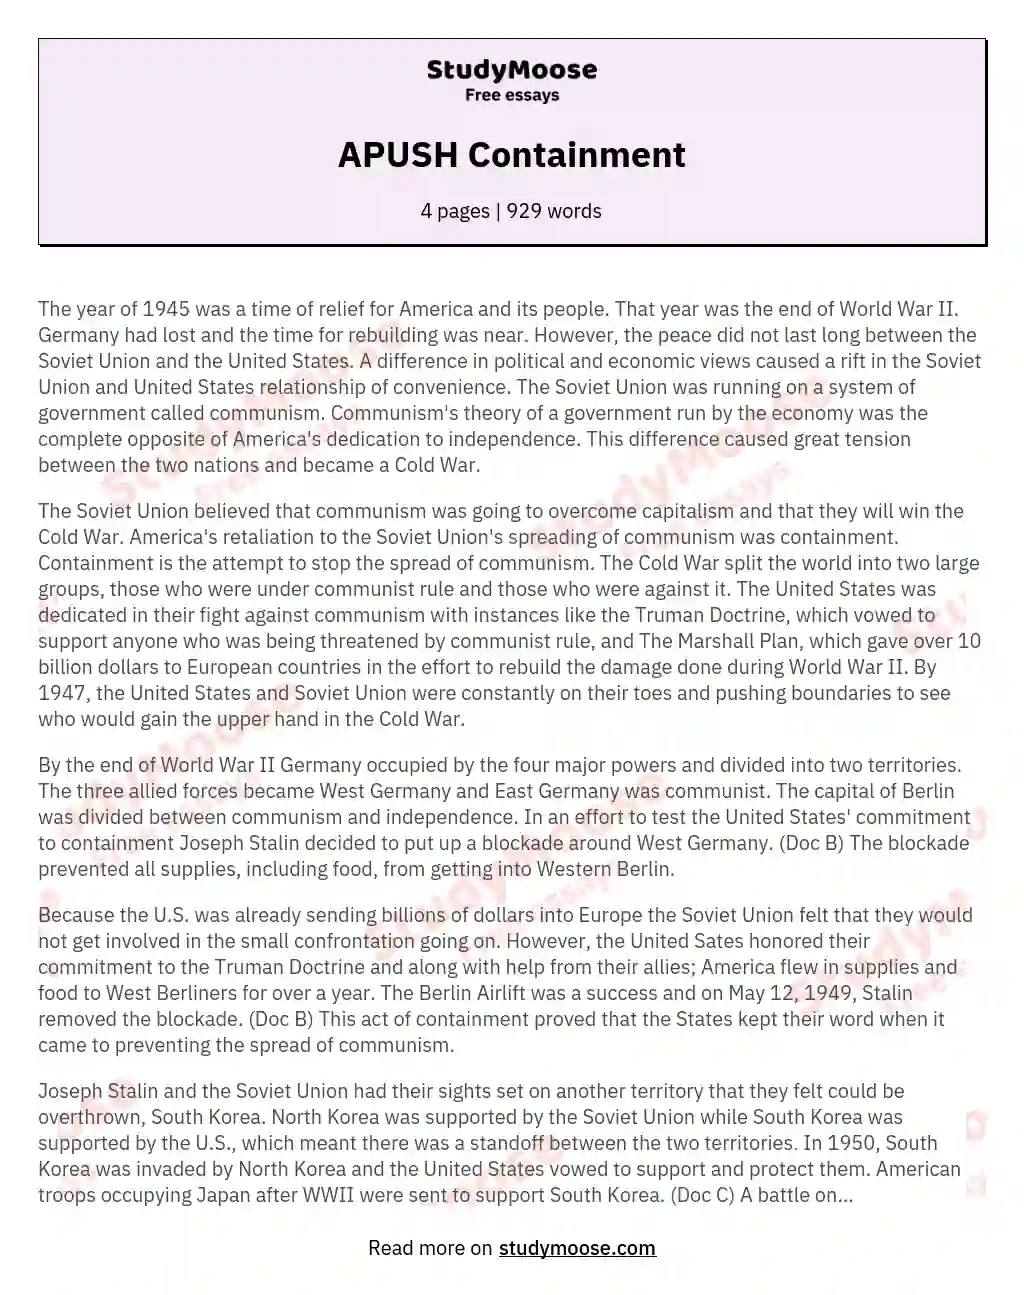 APUSH Containment